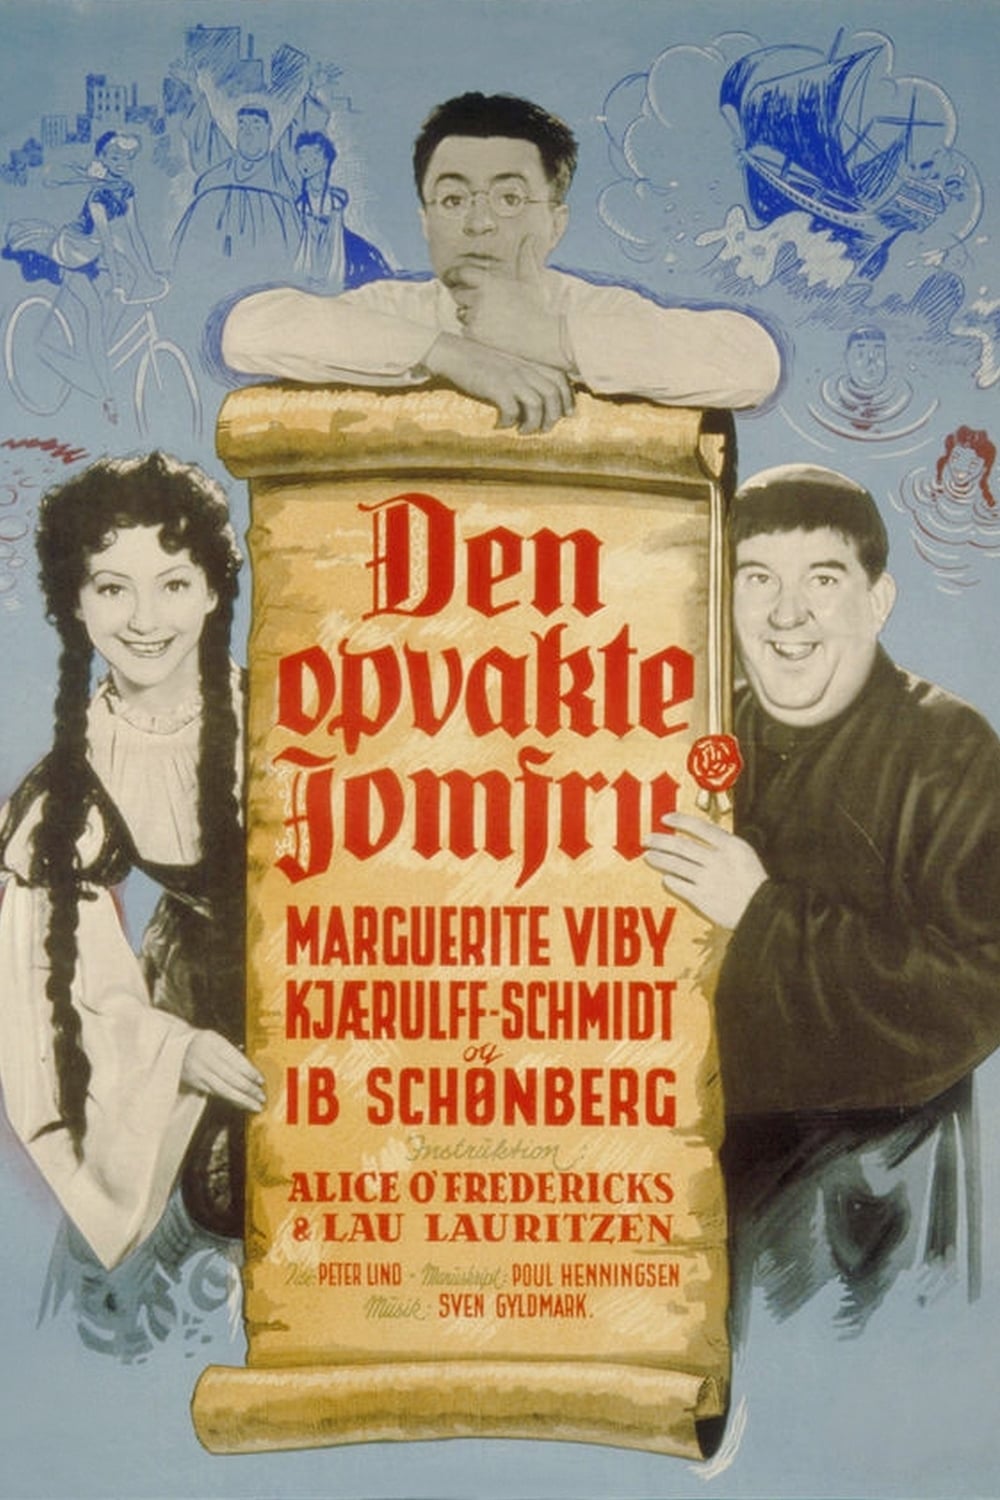 Den opvakte jomfru (1950)